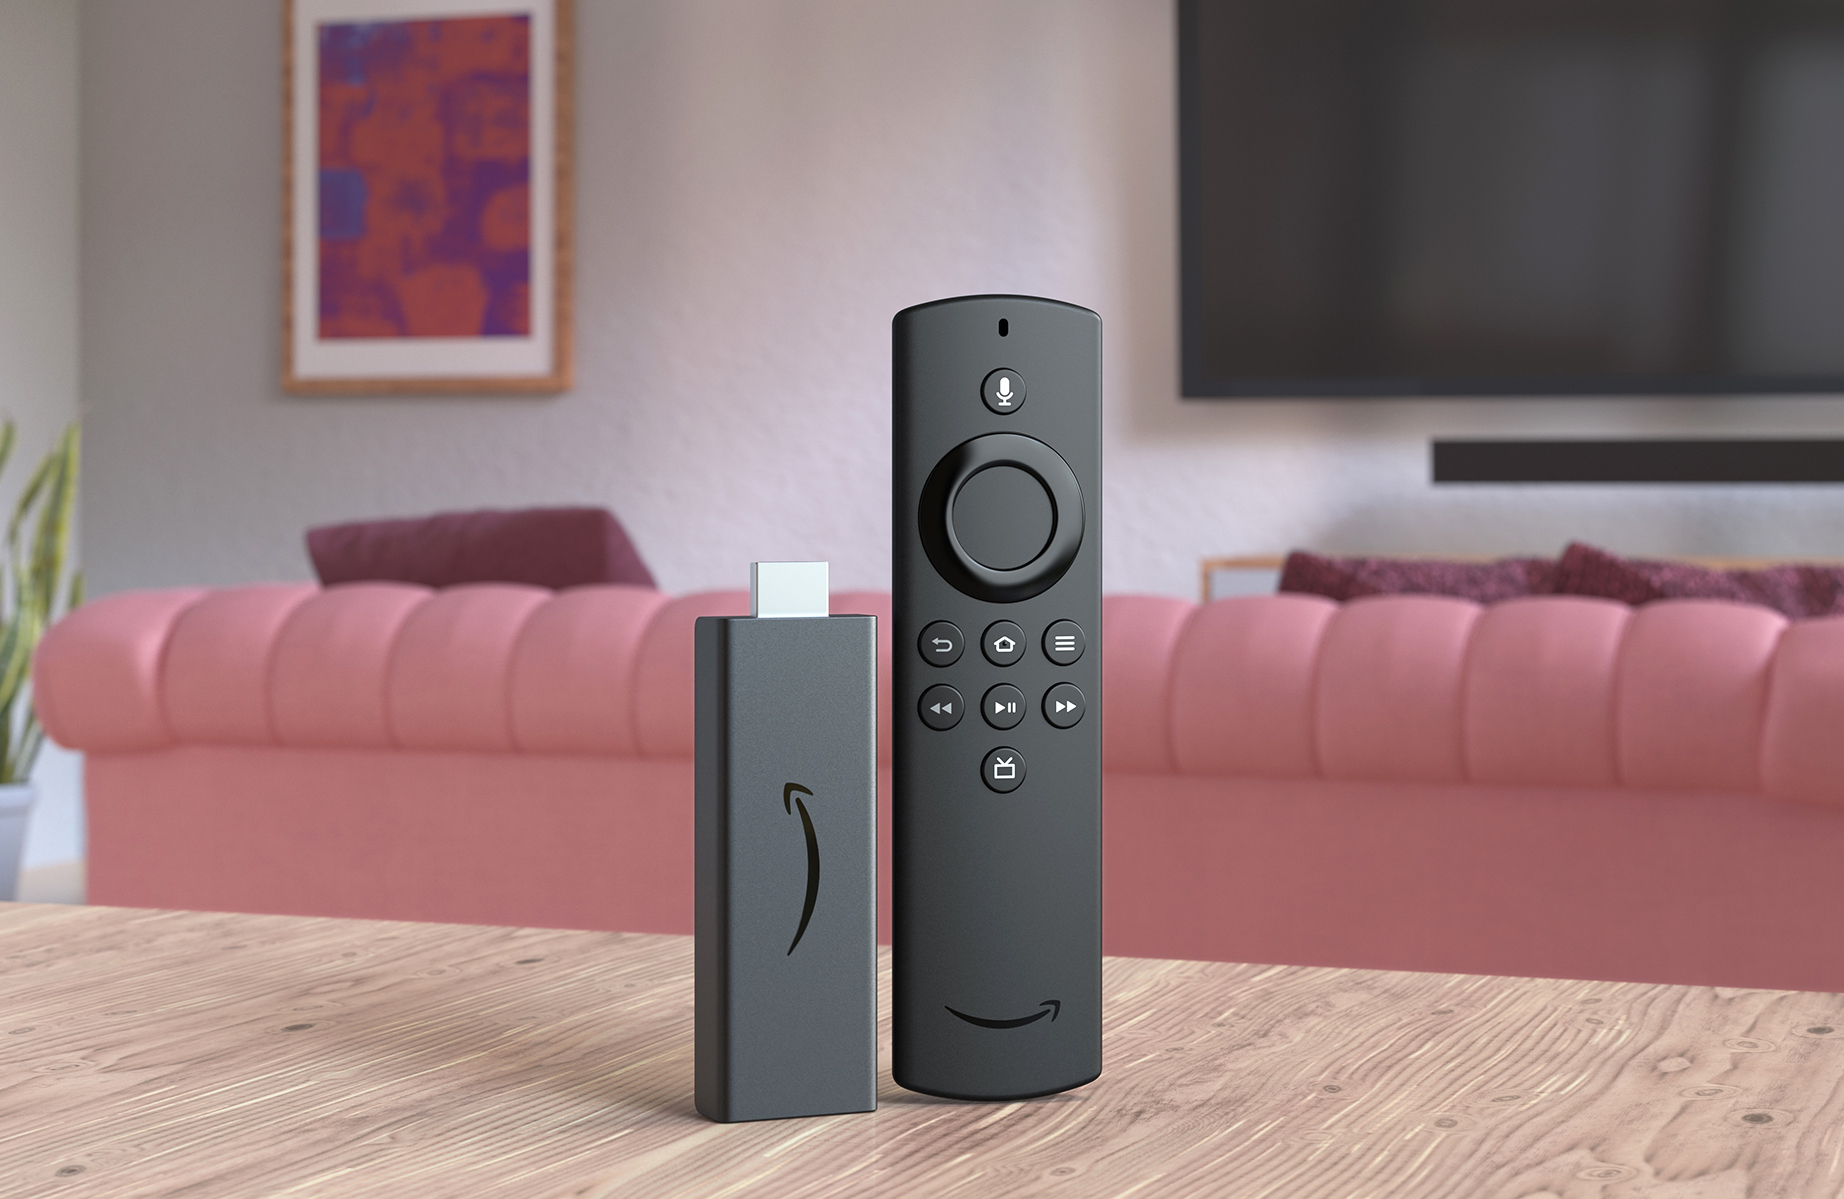 Fire TV Stick Lite của Amazon giảm xuống còn 15 đô la trong đợt giảm giá mới nhất cho bộ truyền phát